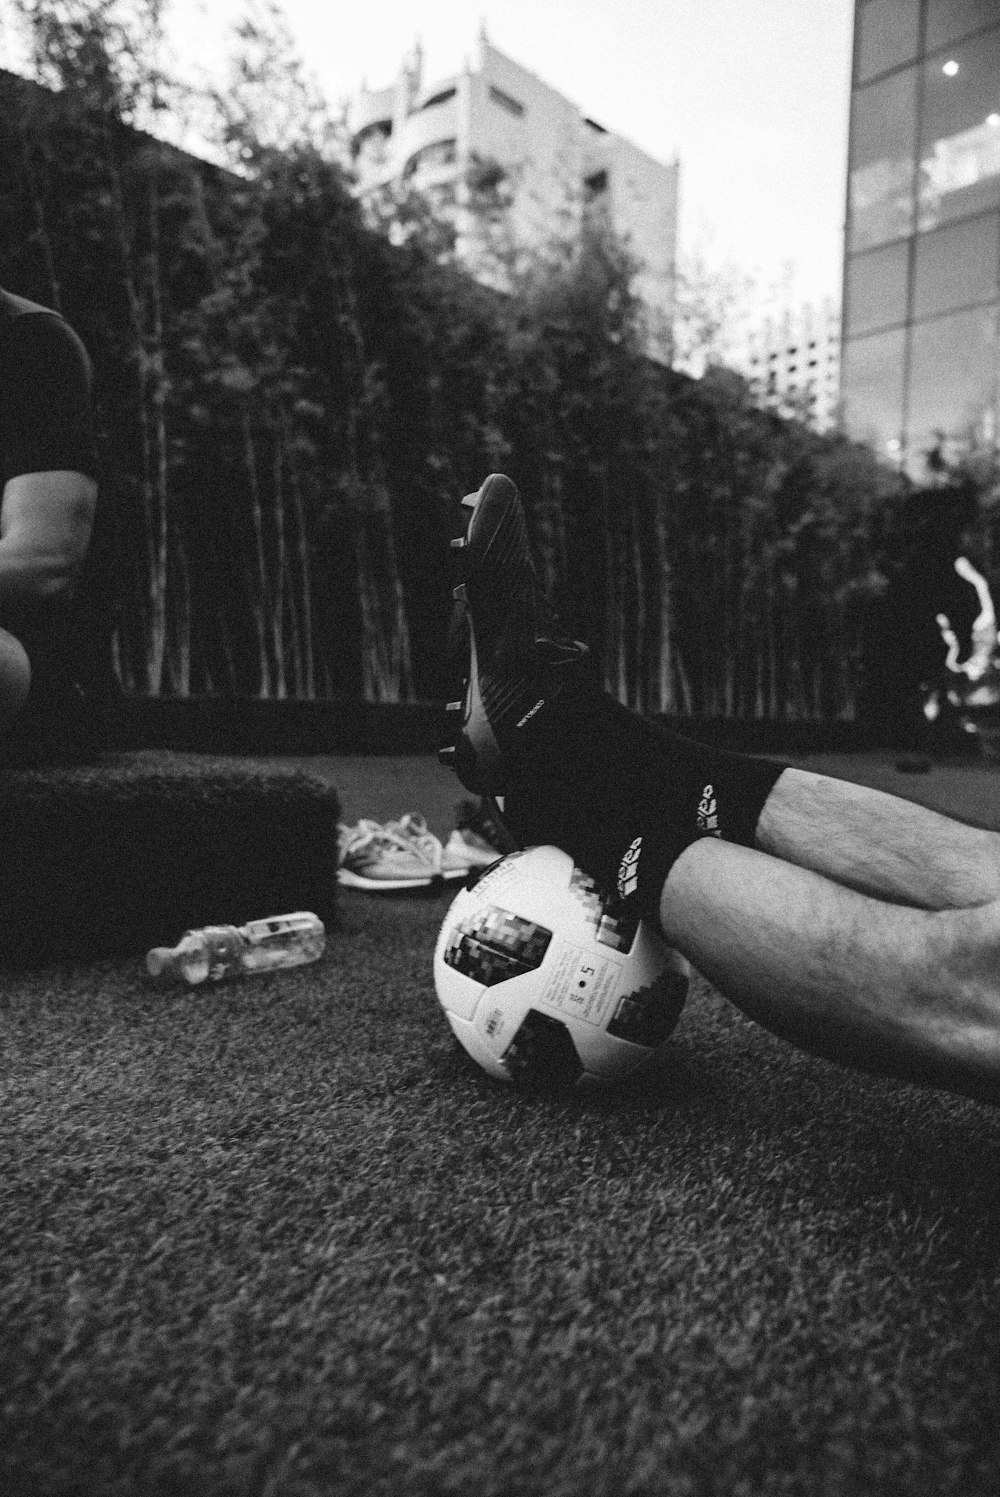 foto in scala di grigi dei piedi di una persona su un pallone da calcio